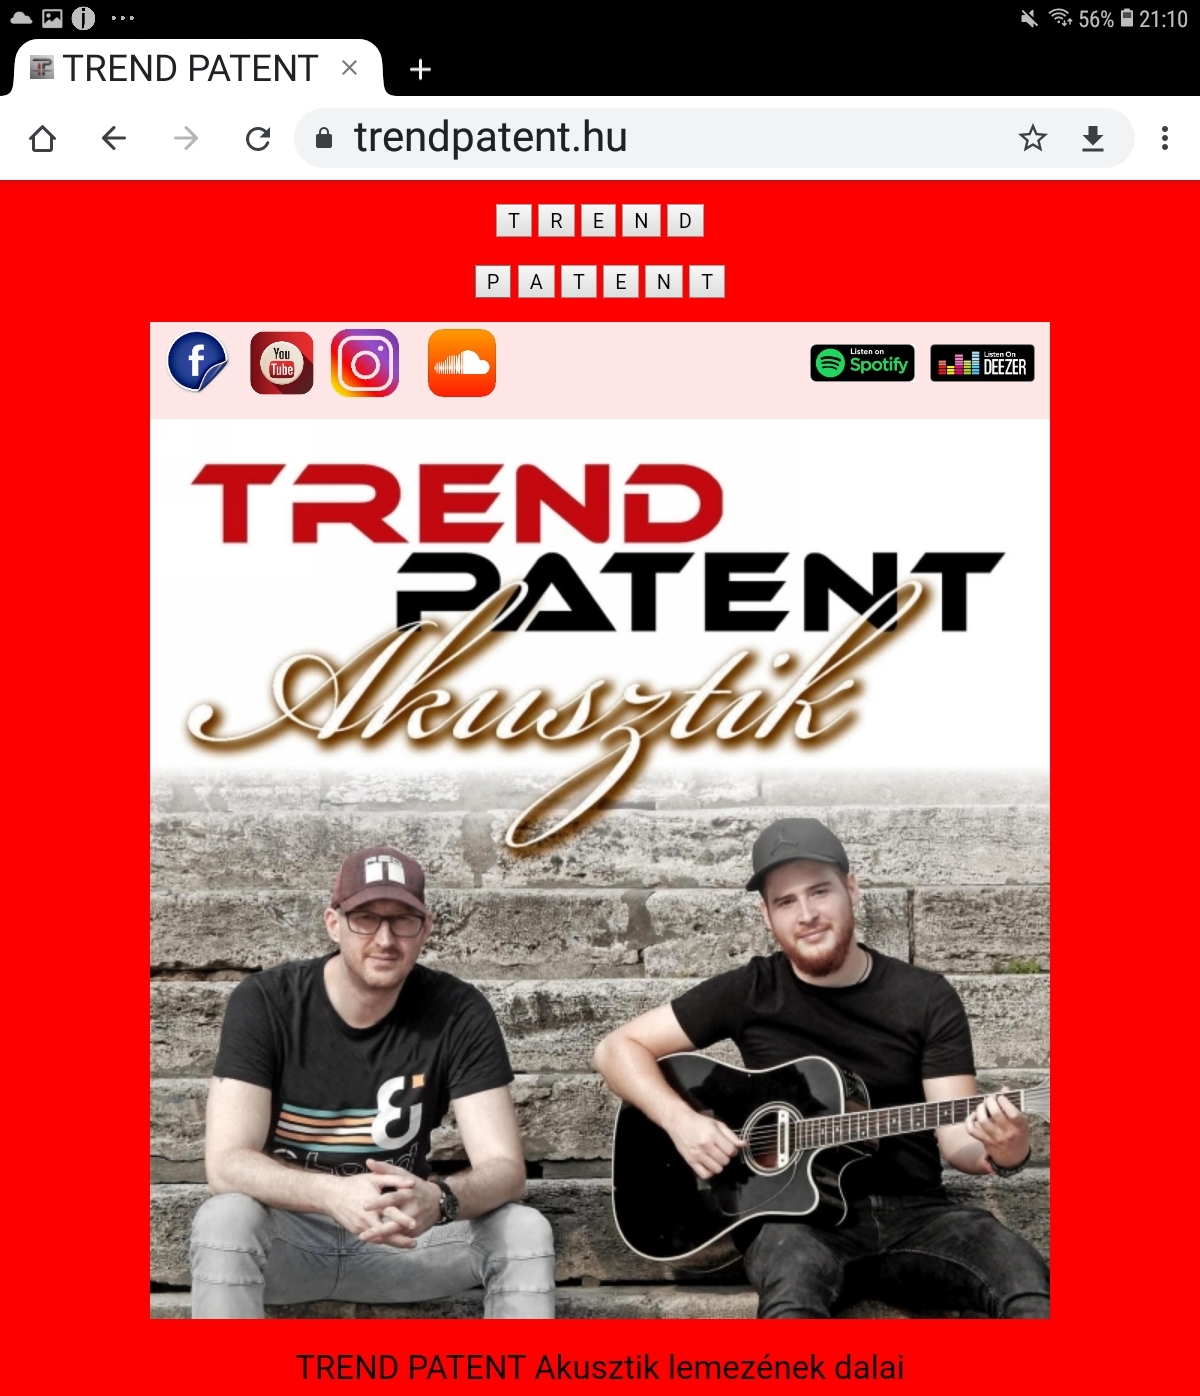 TREND PATENT - Akusztik lemez és új honlap